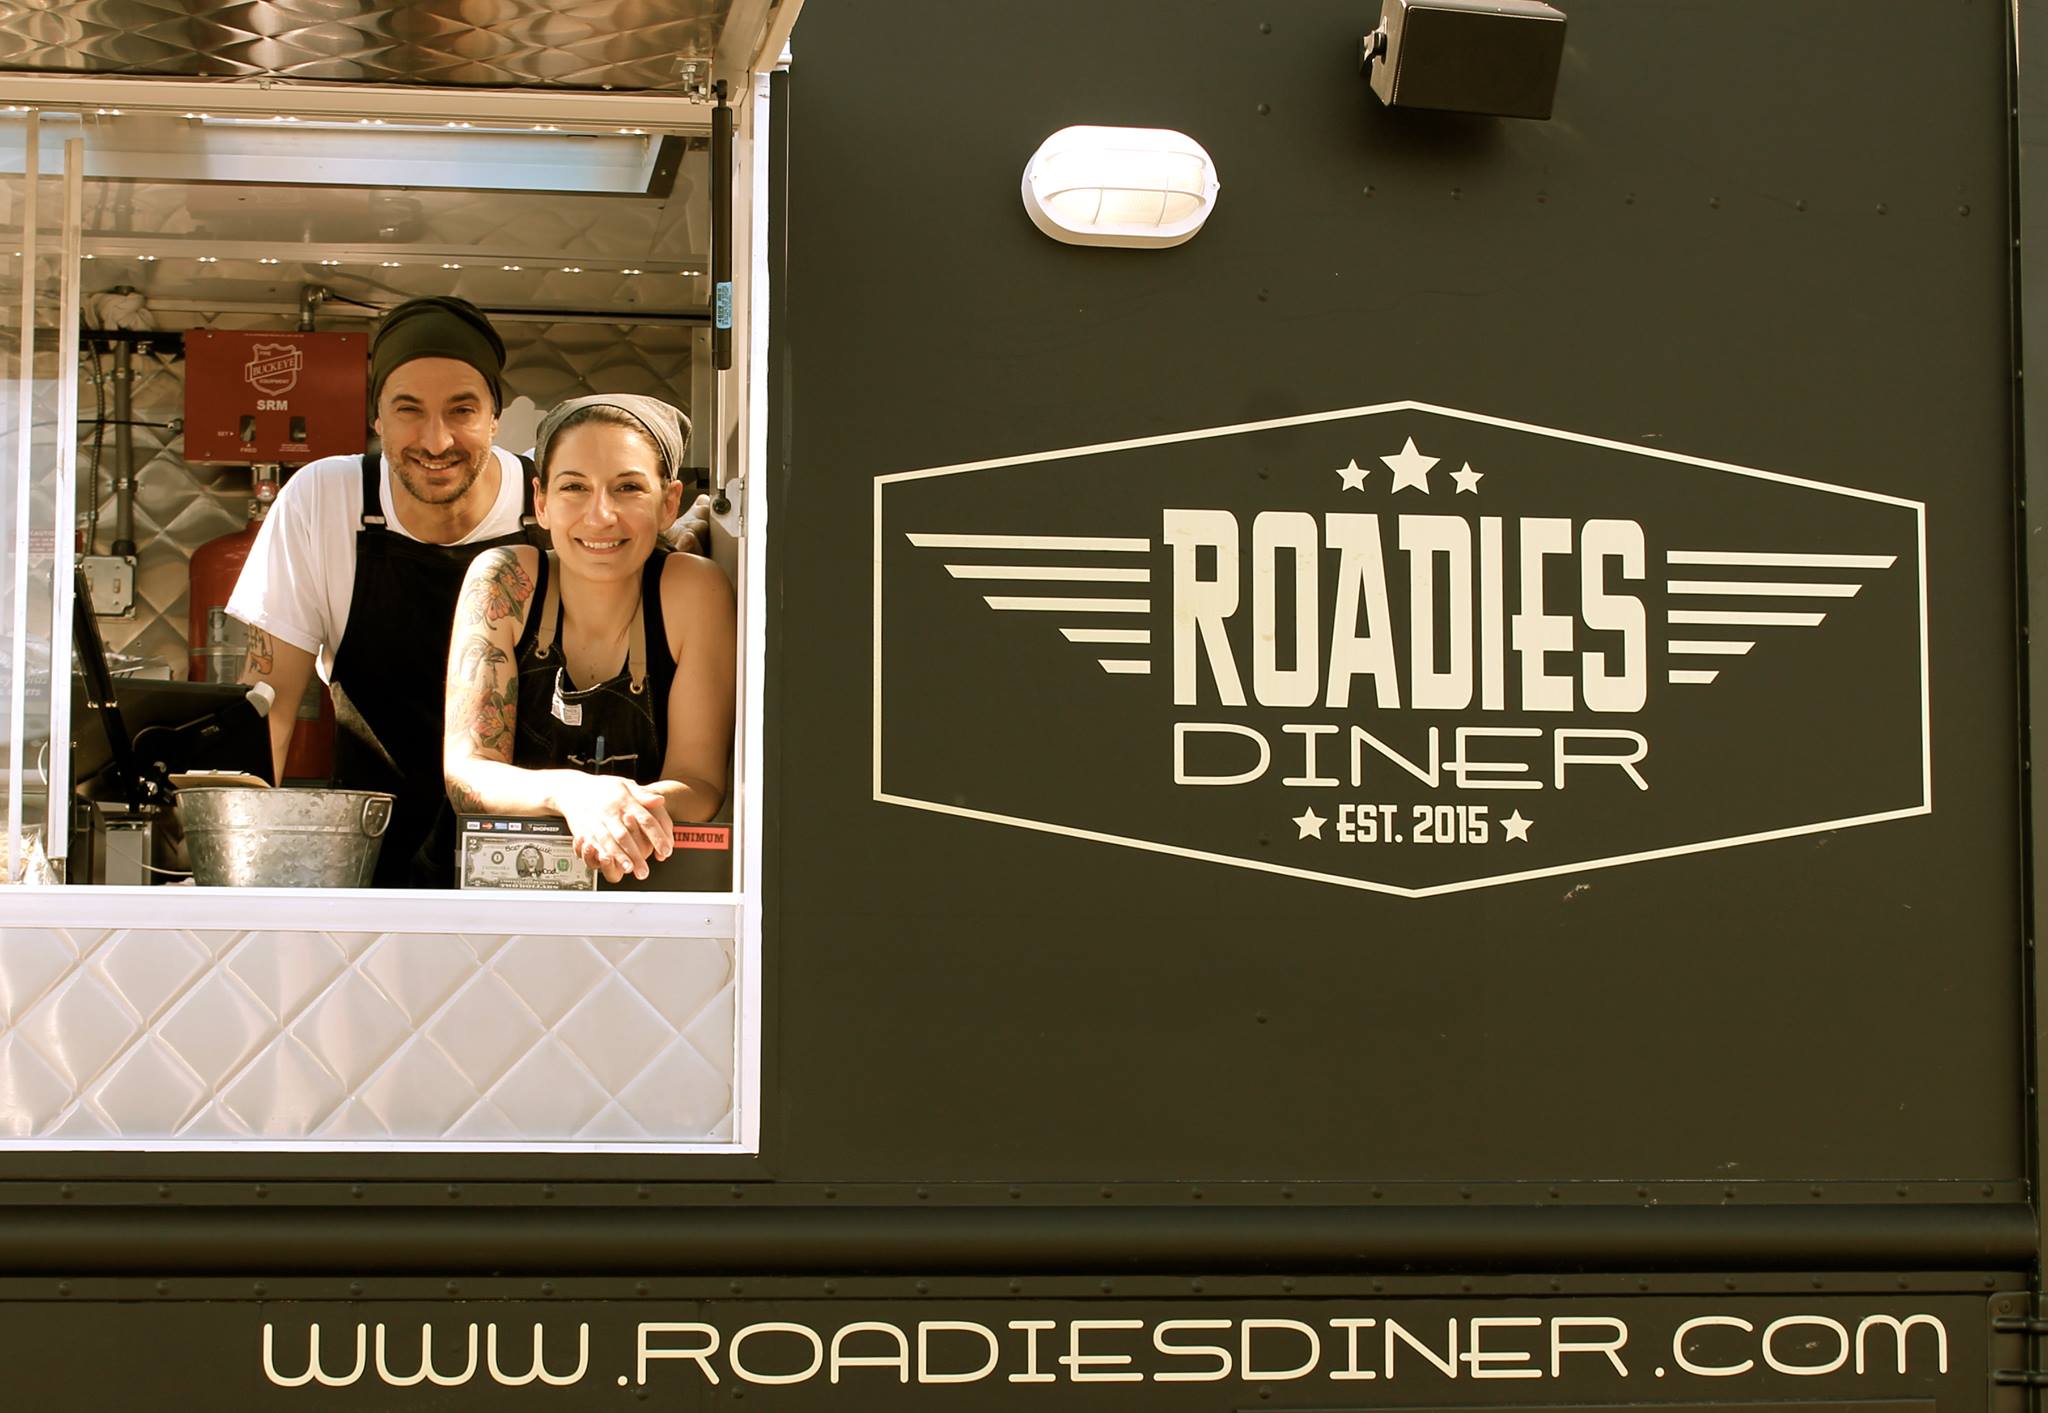 William De Filippis and Erica Pratico of Roadies Diner